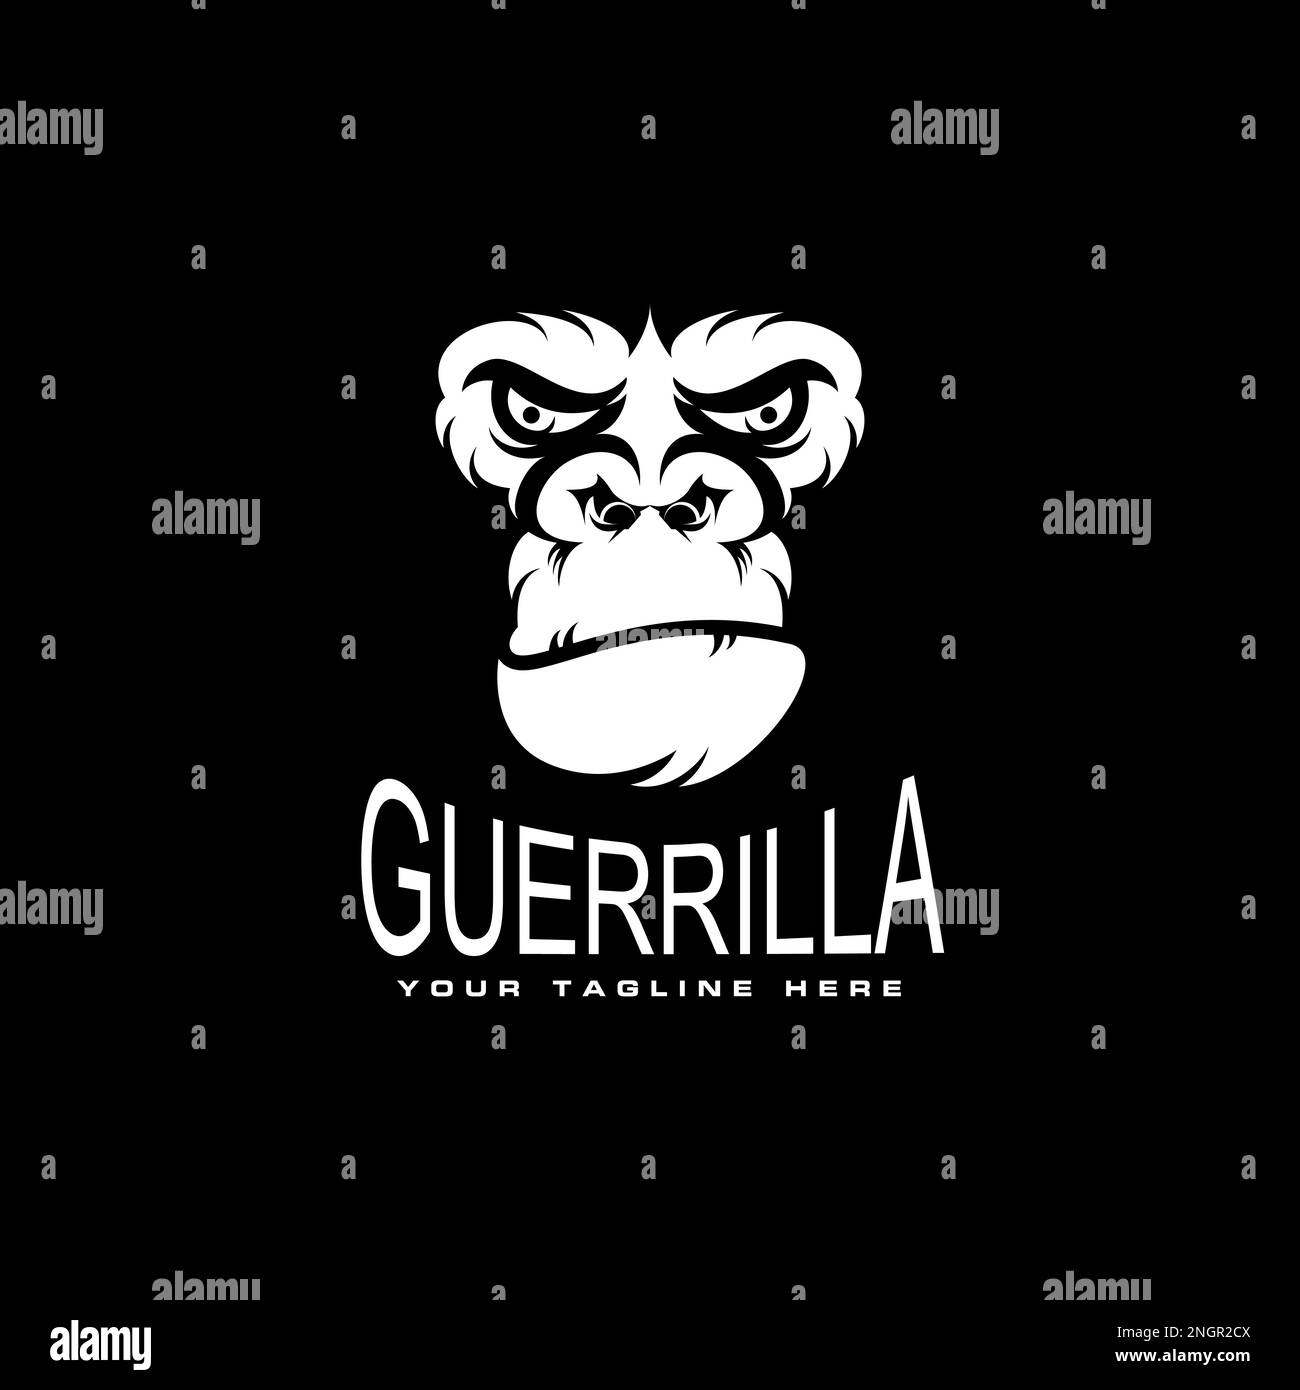 gorillakopf Illustration im wütenden oder ernsten Ausdruck Bild Grafik Symbol Logo Design abstraktes Konzept Vektortier oder Charakter Stock Vektor